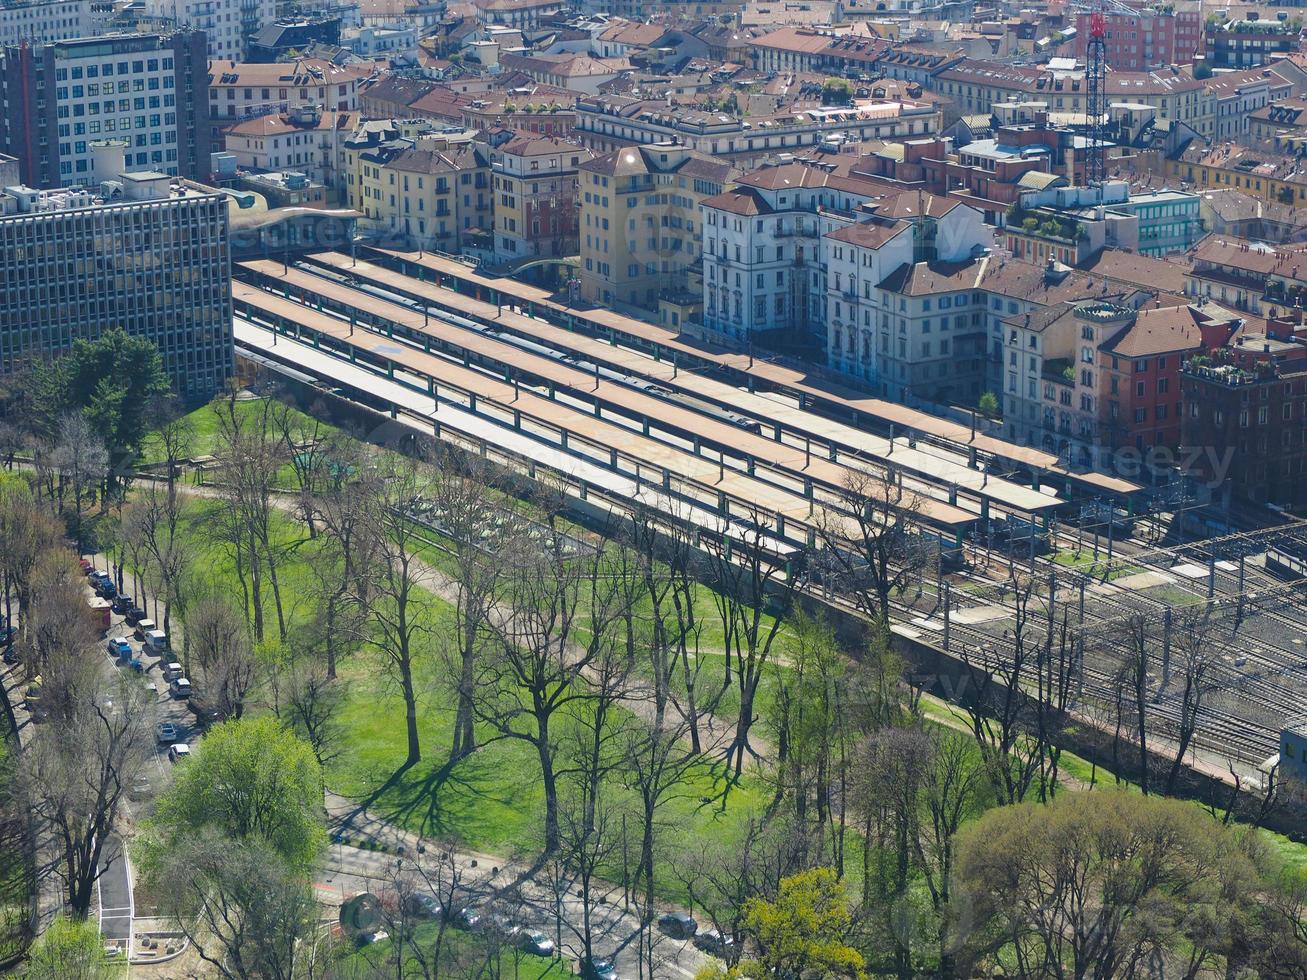 vista aérea de Milão foto